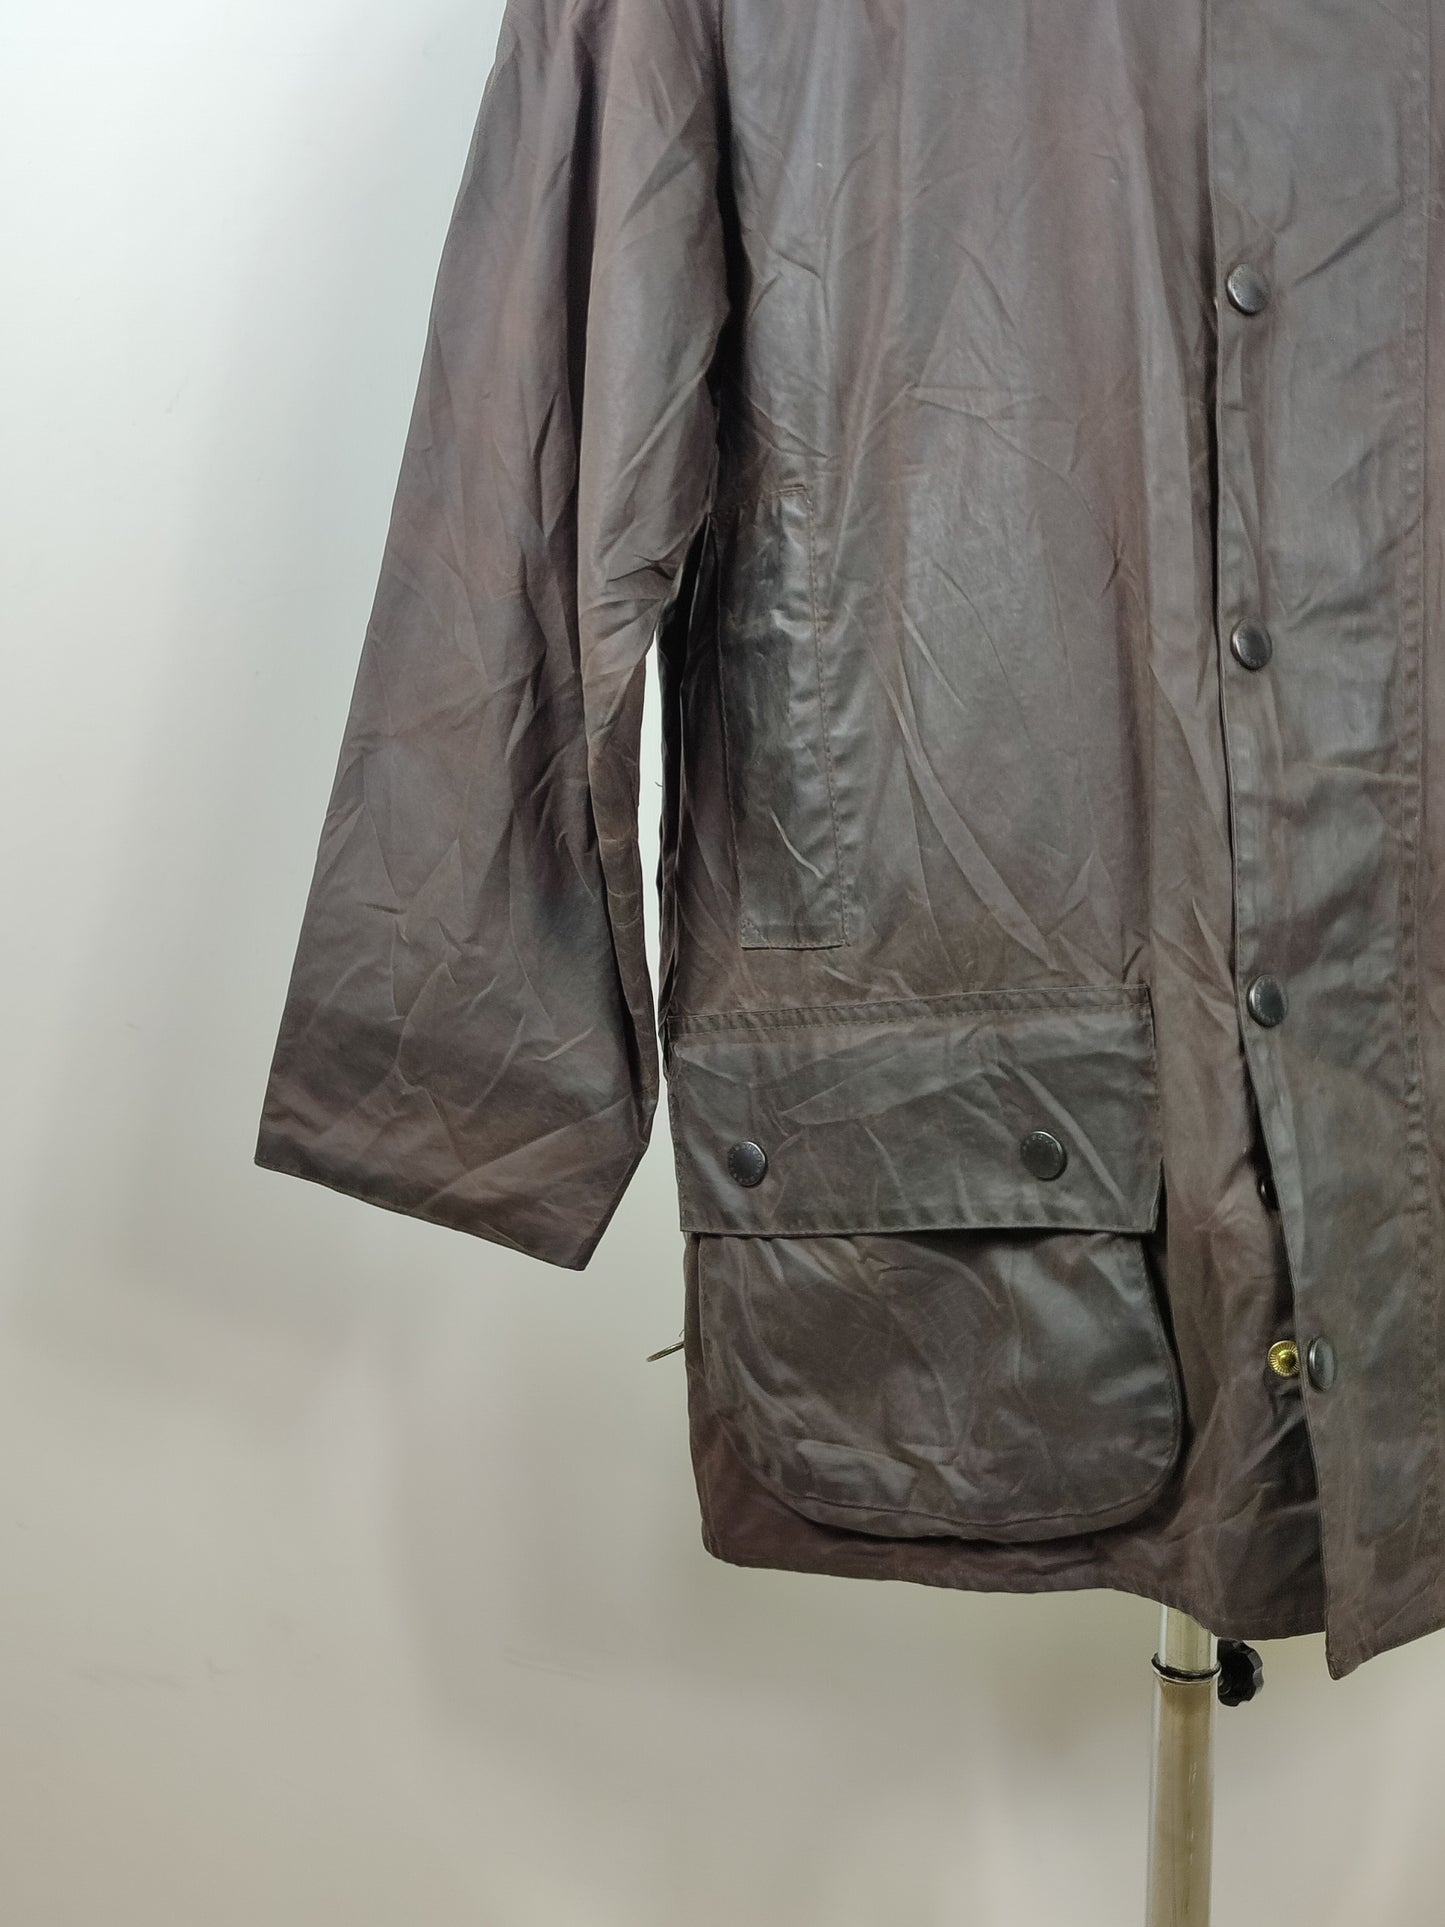 Barbour Beaufort marrone vintage c42/107 cm-Brown Barbour Beaufort Jacket size c42 Large